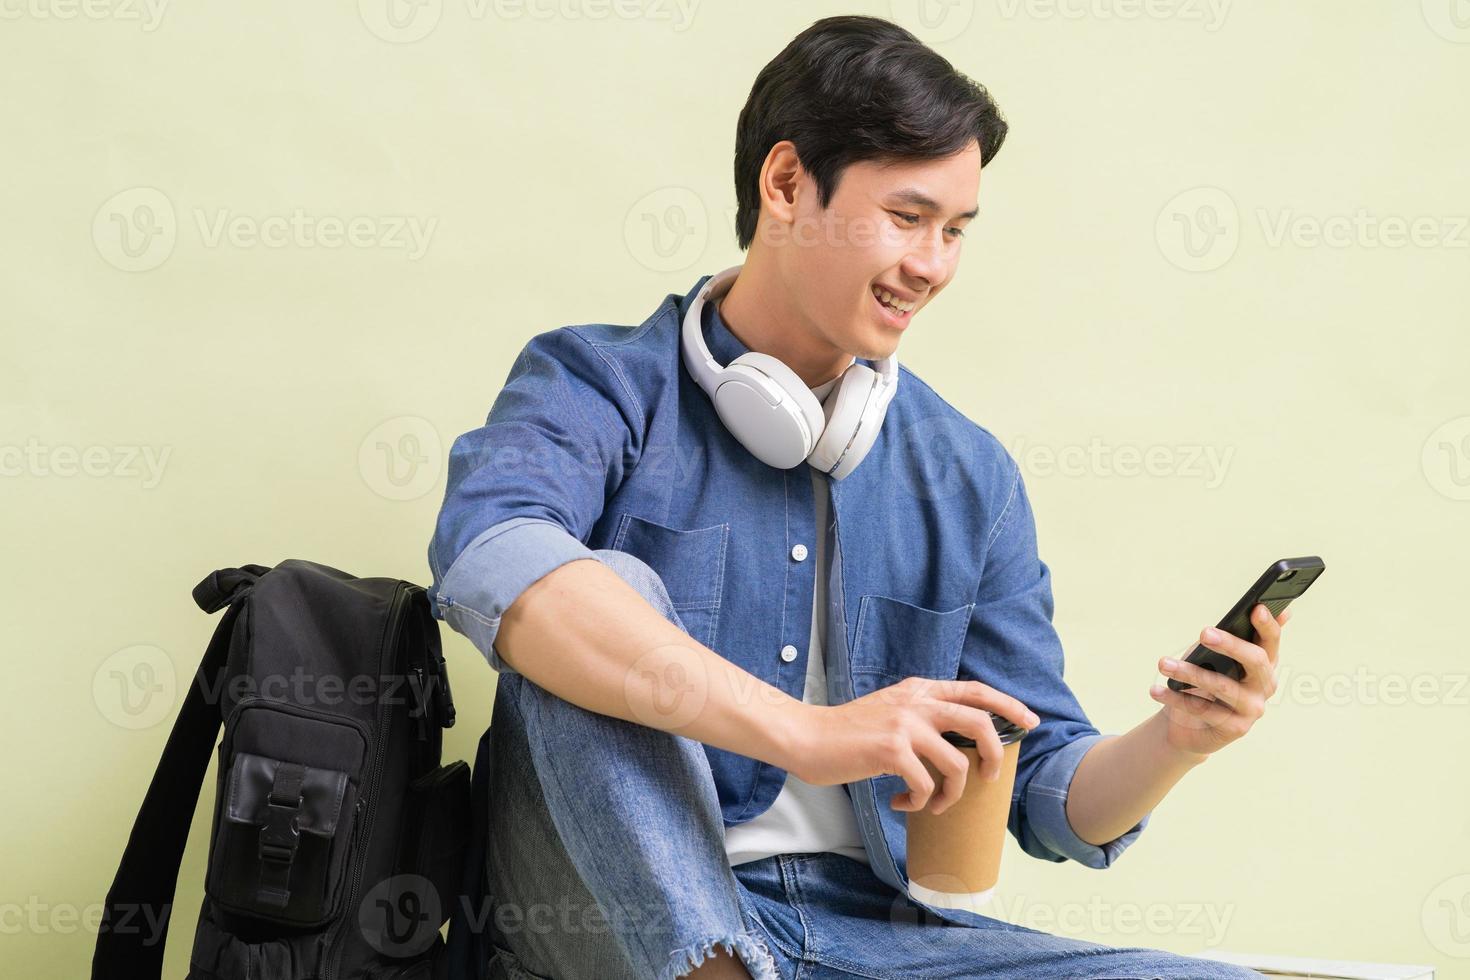 beau garçon étudiant asiatique assis à l'aide d'un téléphone intelligent photo